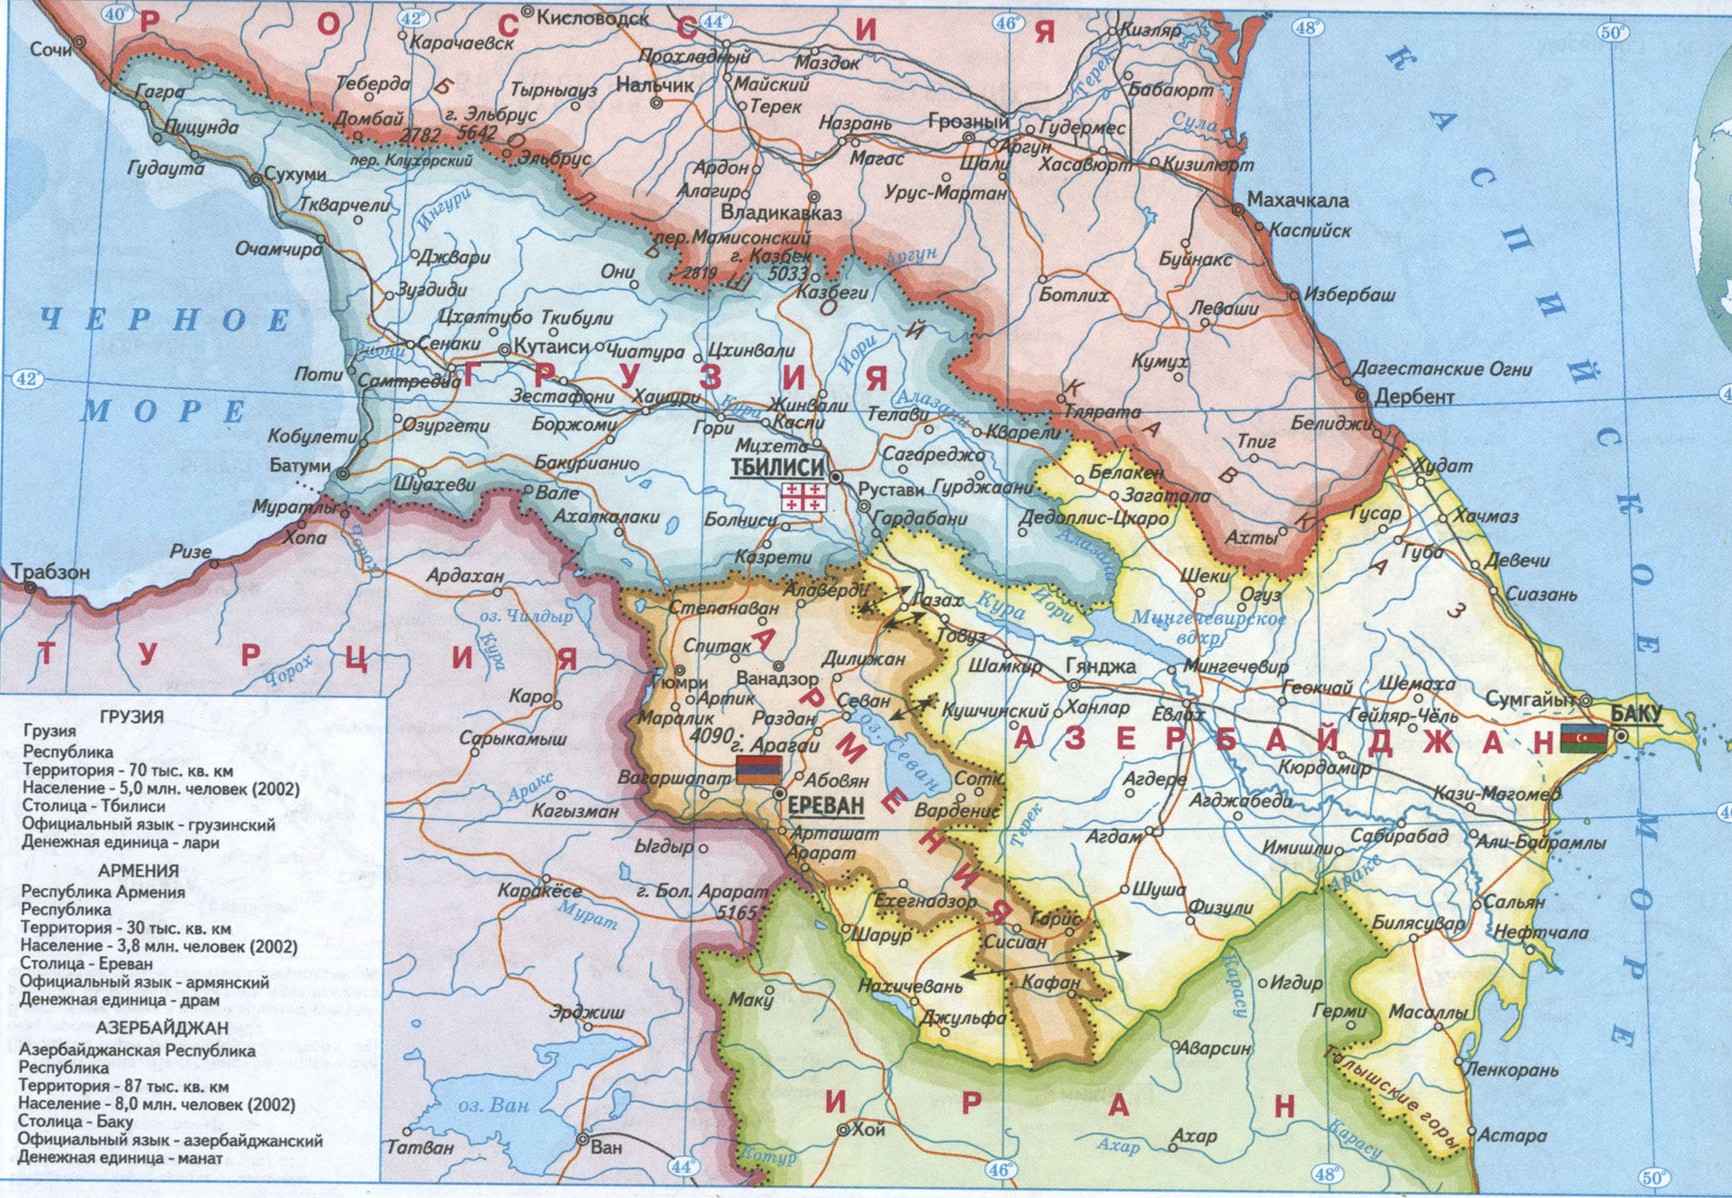 Карта Грузии, Армении, Азербайджана